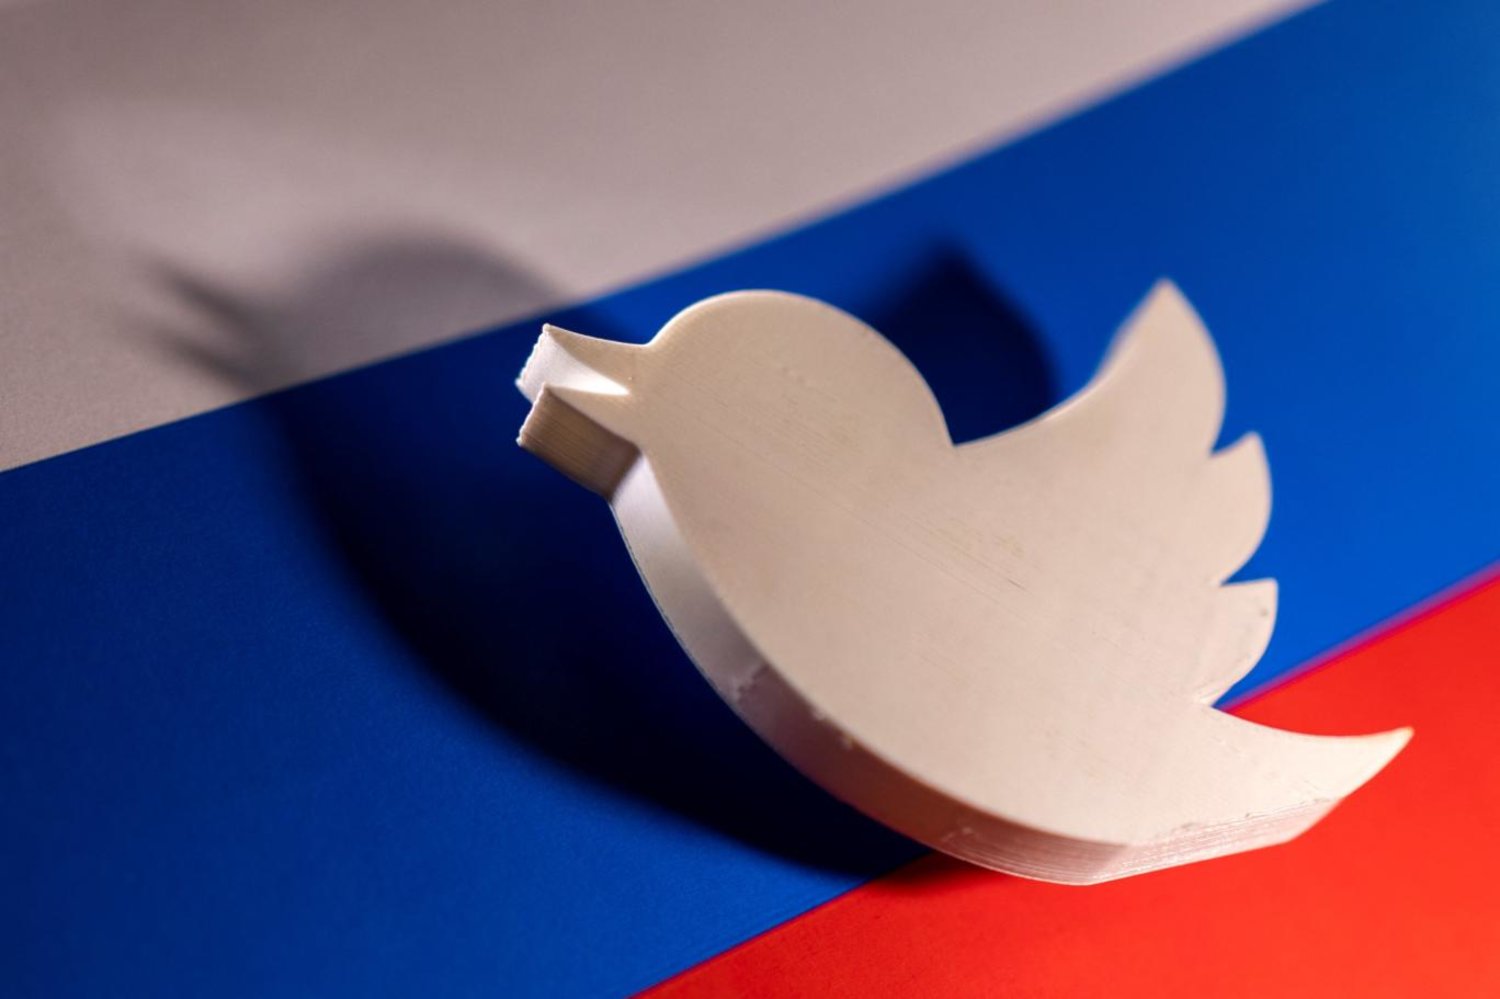 Kremlin, Ukrayna'ya yönelik askeri operasyona ilişkin sahte haberler yaydığı gerekçesiyle martta ülke çapında Twitter'a erişimi yasaklamıştı (Reuters)

